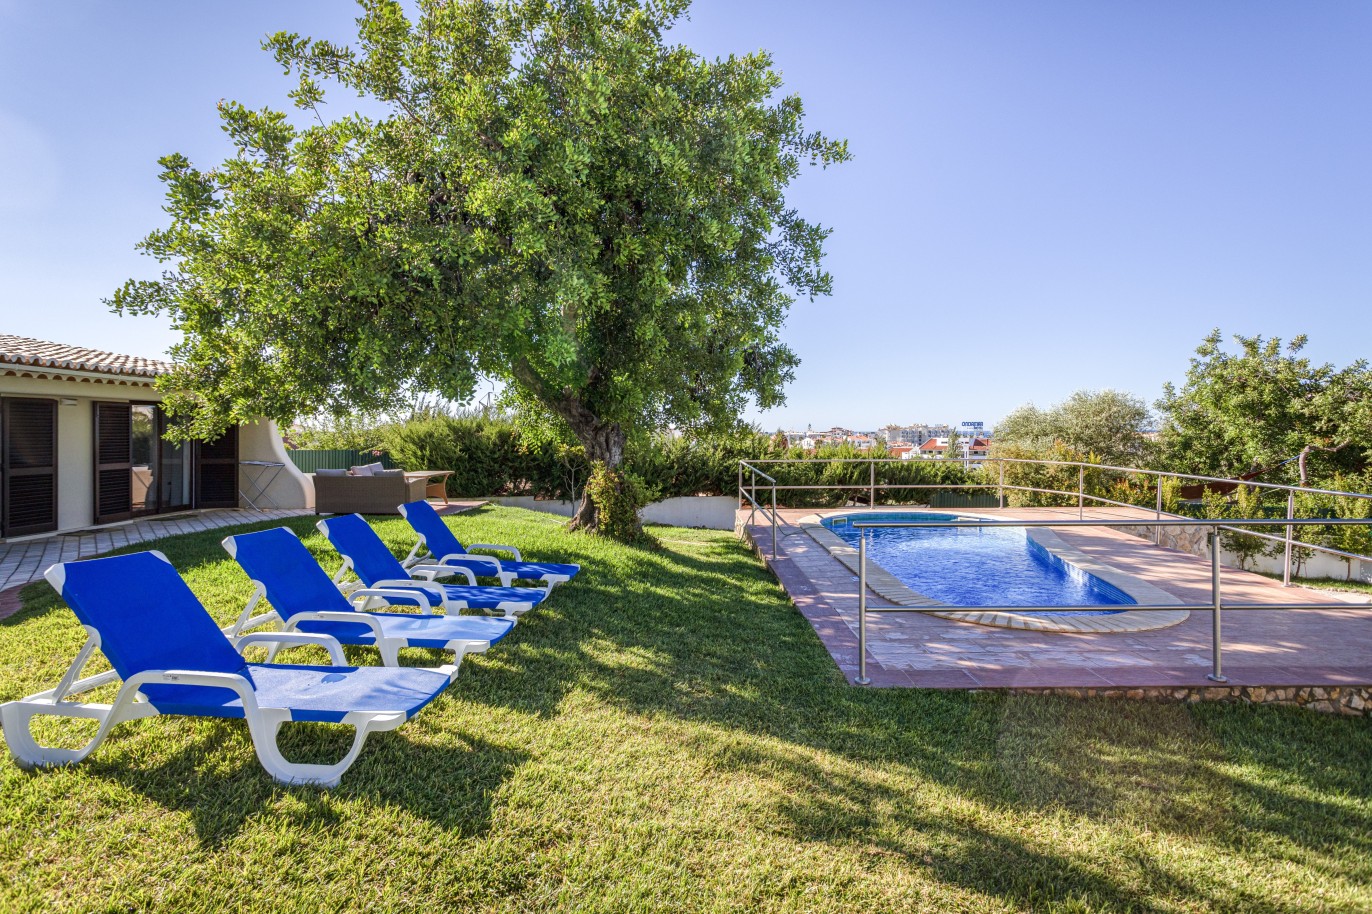 Moradia V4 com piscina, para venda em Albufeira, Algarve_233609